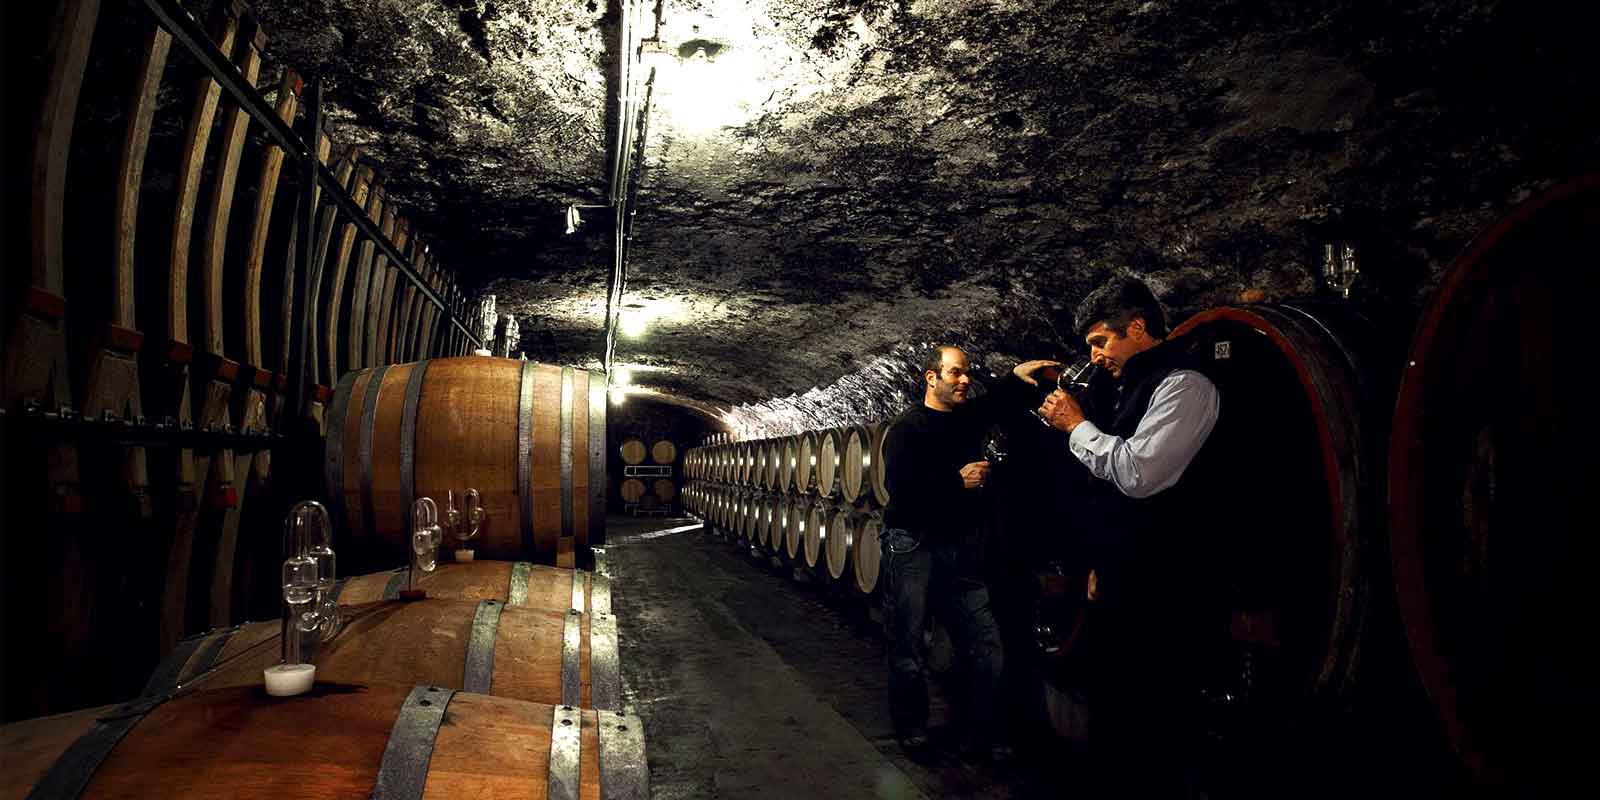 Weingut Kunstler - Region vinicola de Rheingau No son los valores analiticos los que determinan la calidad, sino el sabor de la uva, el aroma del mosto y, sobre todo, la armonia de los vinos.